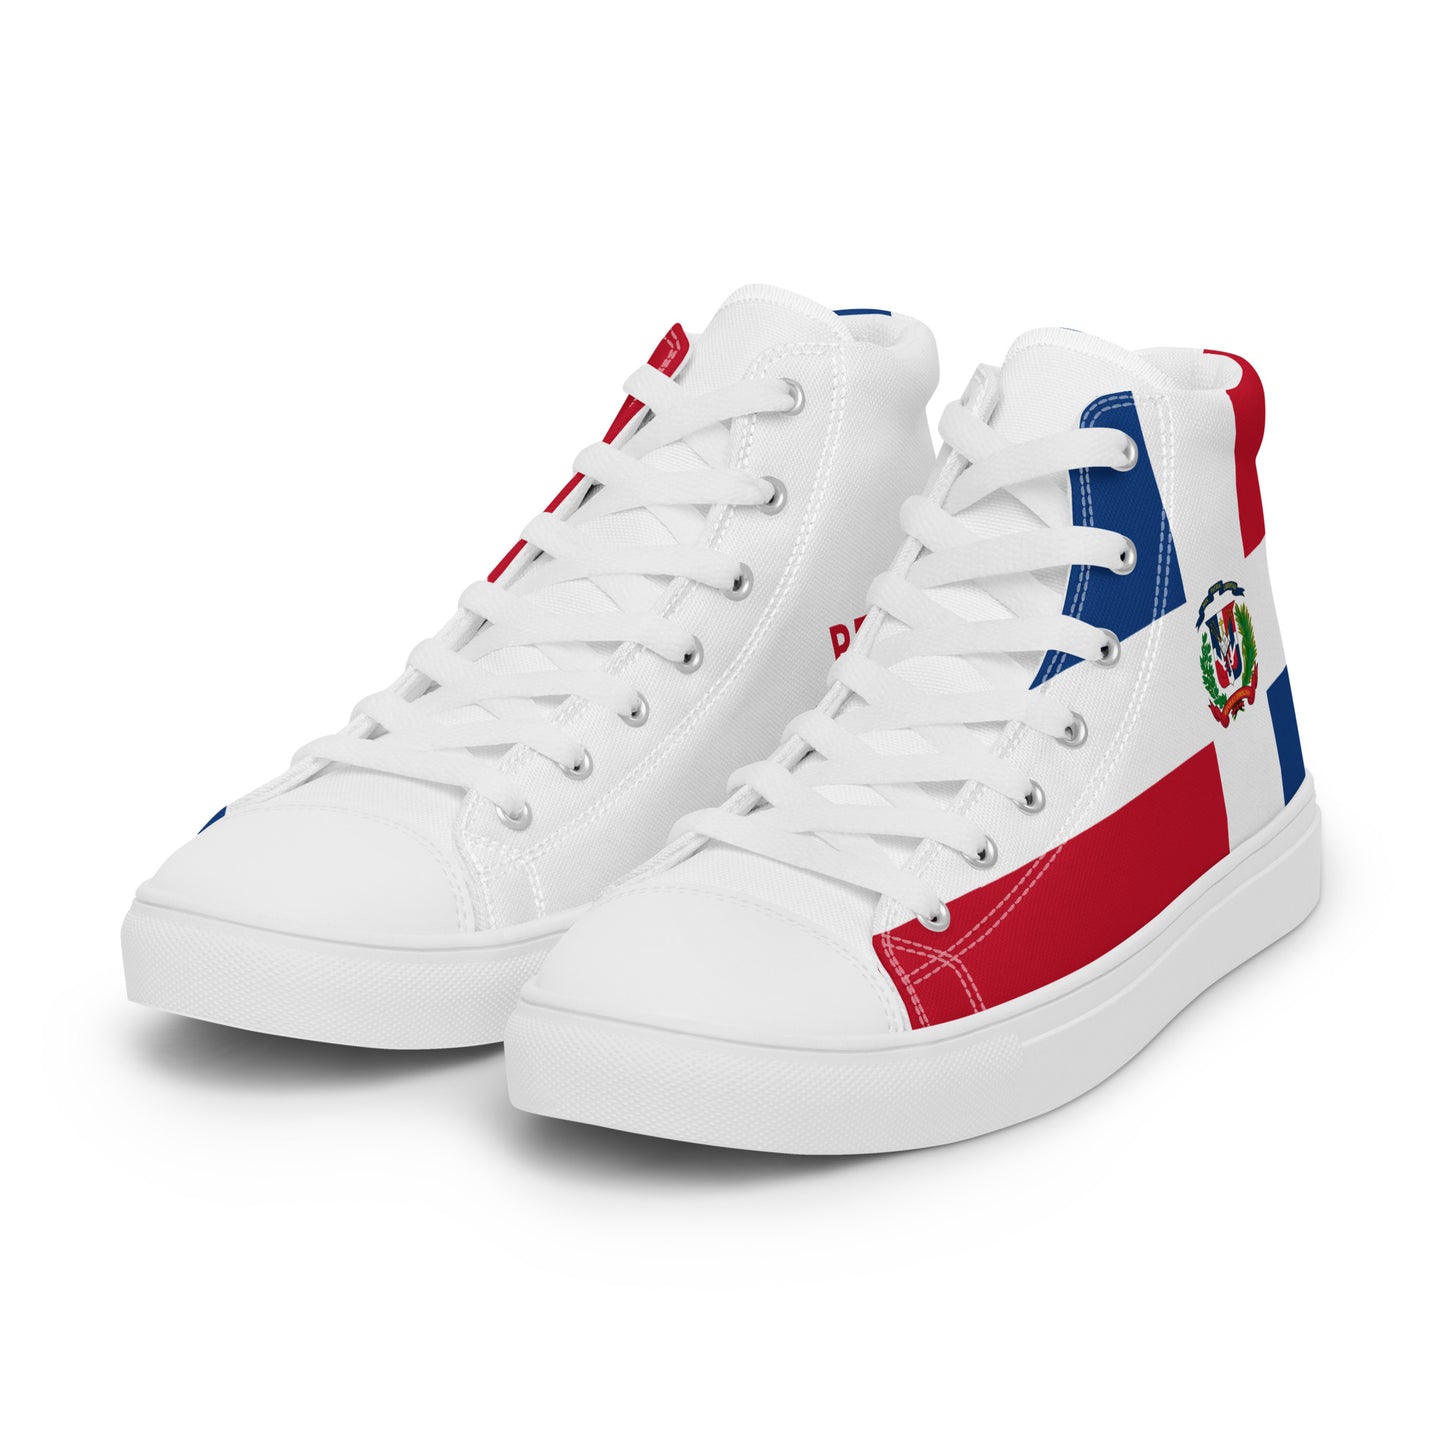 República Dominicana - Women - Bandera - High top shoes